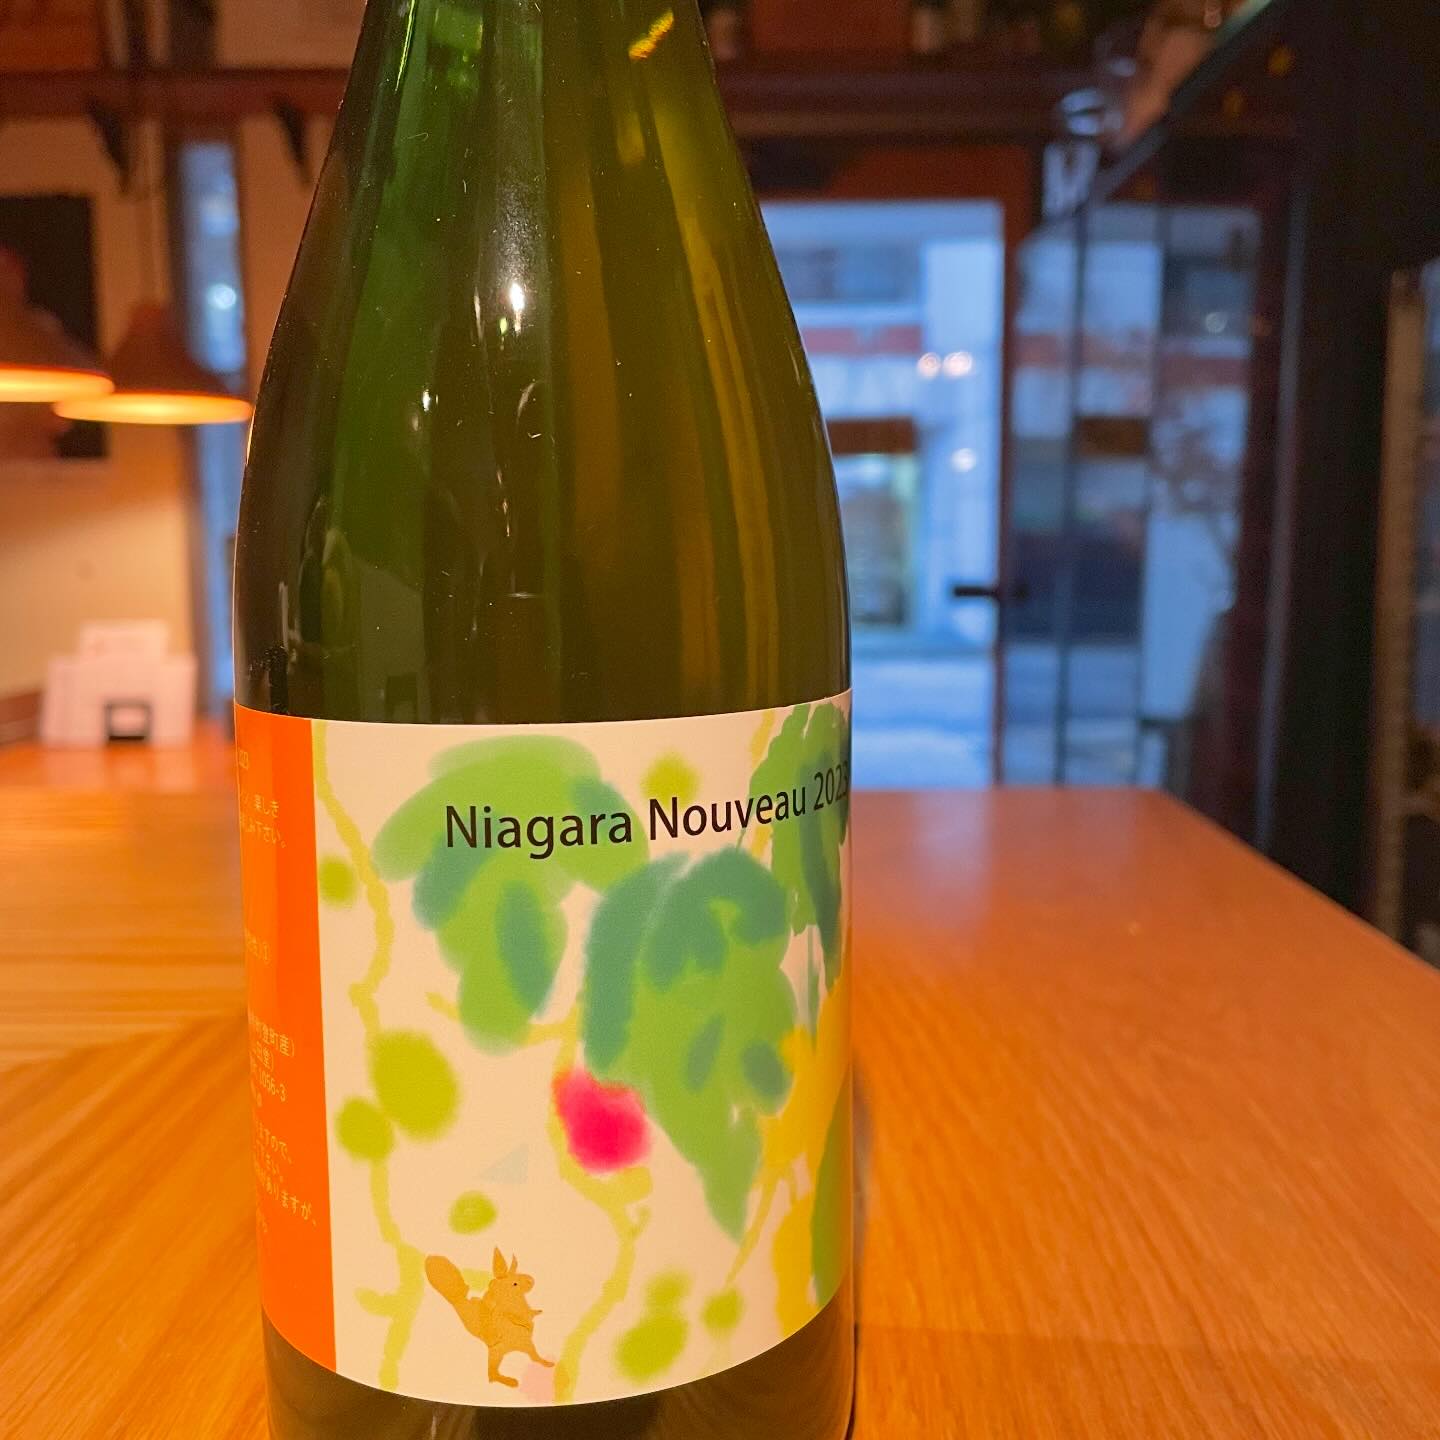 今日12/21はあいにくの天気ですが、17:00より営業してます♪場合によっては早仕舞いするかもです。今日は山田堂さん@北海道のナイアガラヌーボーをグラスで開けています。微発泡の若々しいグリーンなブドウを感じる爽やかな香りと味わいです♪#イルフェソワフ #ワイン#日本酒 #薬院#警固#焼き鳥#ナチュラルワイン#ヴァンナチュール#自然派ワイン#山田堂#ナイアガラヌーボー